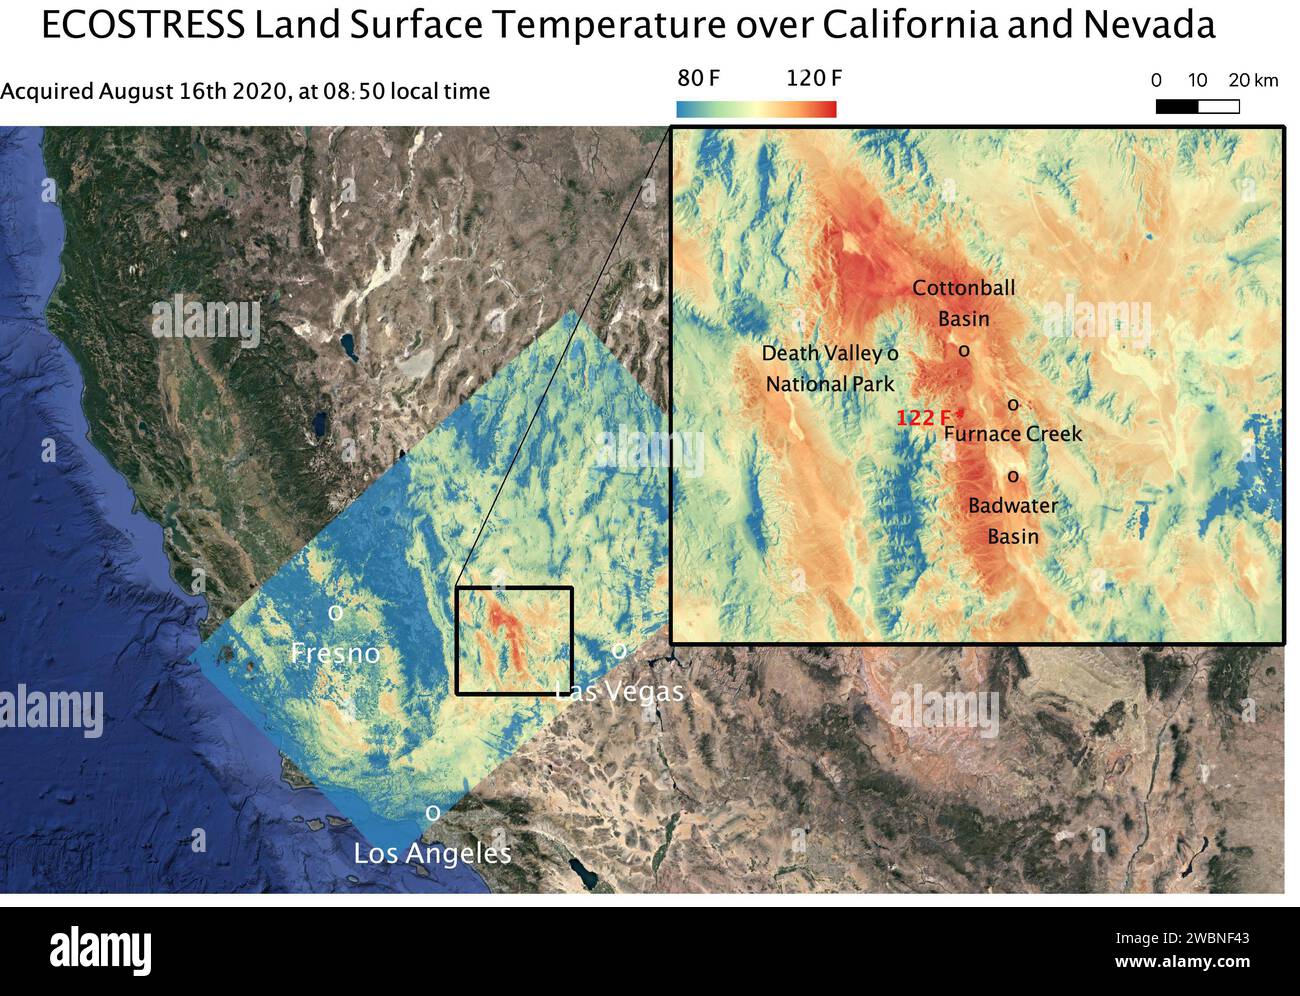 Questa mappa della temperatura mostra le temperature della superficie terrestre intorno alla Death Valley nel deserto del Mojave in California il 16 agosto 2020. L'osservazione è stata resa possibile dall'Ecosystem Spaceborne Thermal Radiometer Experiment on Space Station (ECOSTRESS) della NASA, che ha misurato una temperatura superficiale massima di 122,52 gradi Fahrenheit (50,29 gradi Celsius) vicino a Furnace Creek. ECOSTRESS ha raccolto questi dati quando la stazione spaziale ha superato la California alle 8 50 circa PDT (11 50 EDT) durante un'onda di calore da record che ha afferrato la regione. Con una risoluzione di circa 77 per 77 iarde (70 per 70 me Foto Stock